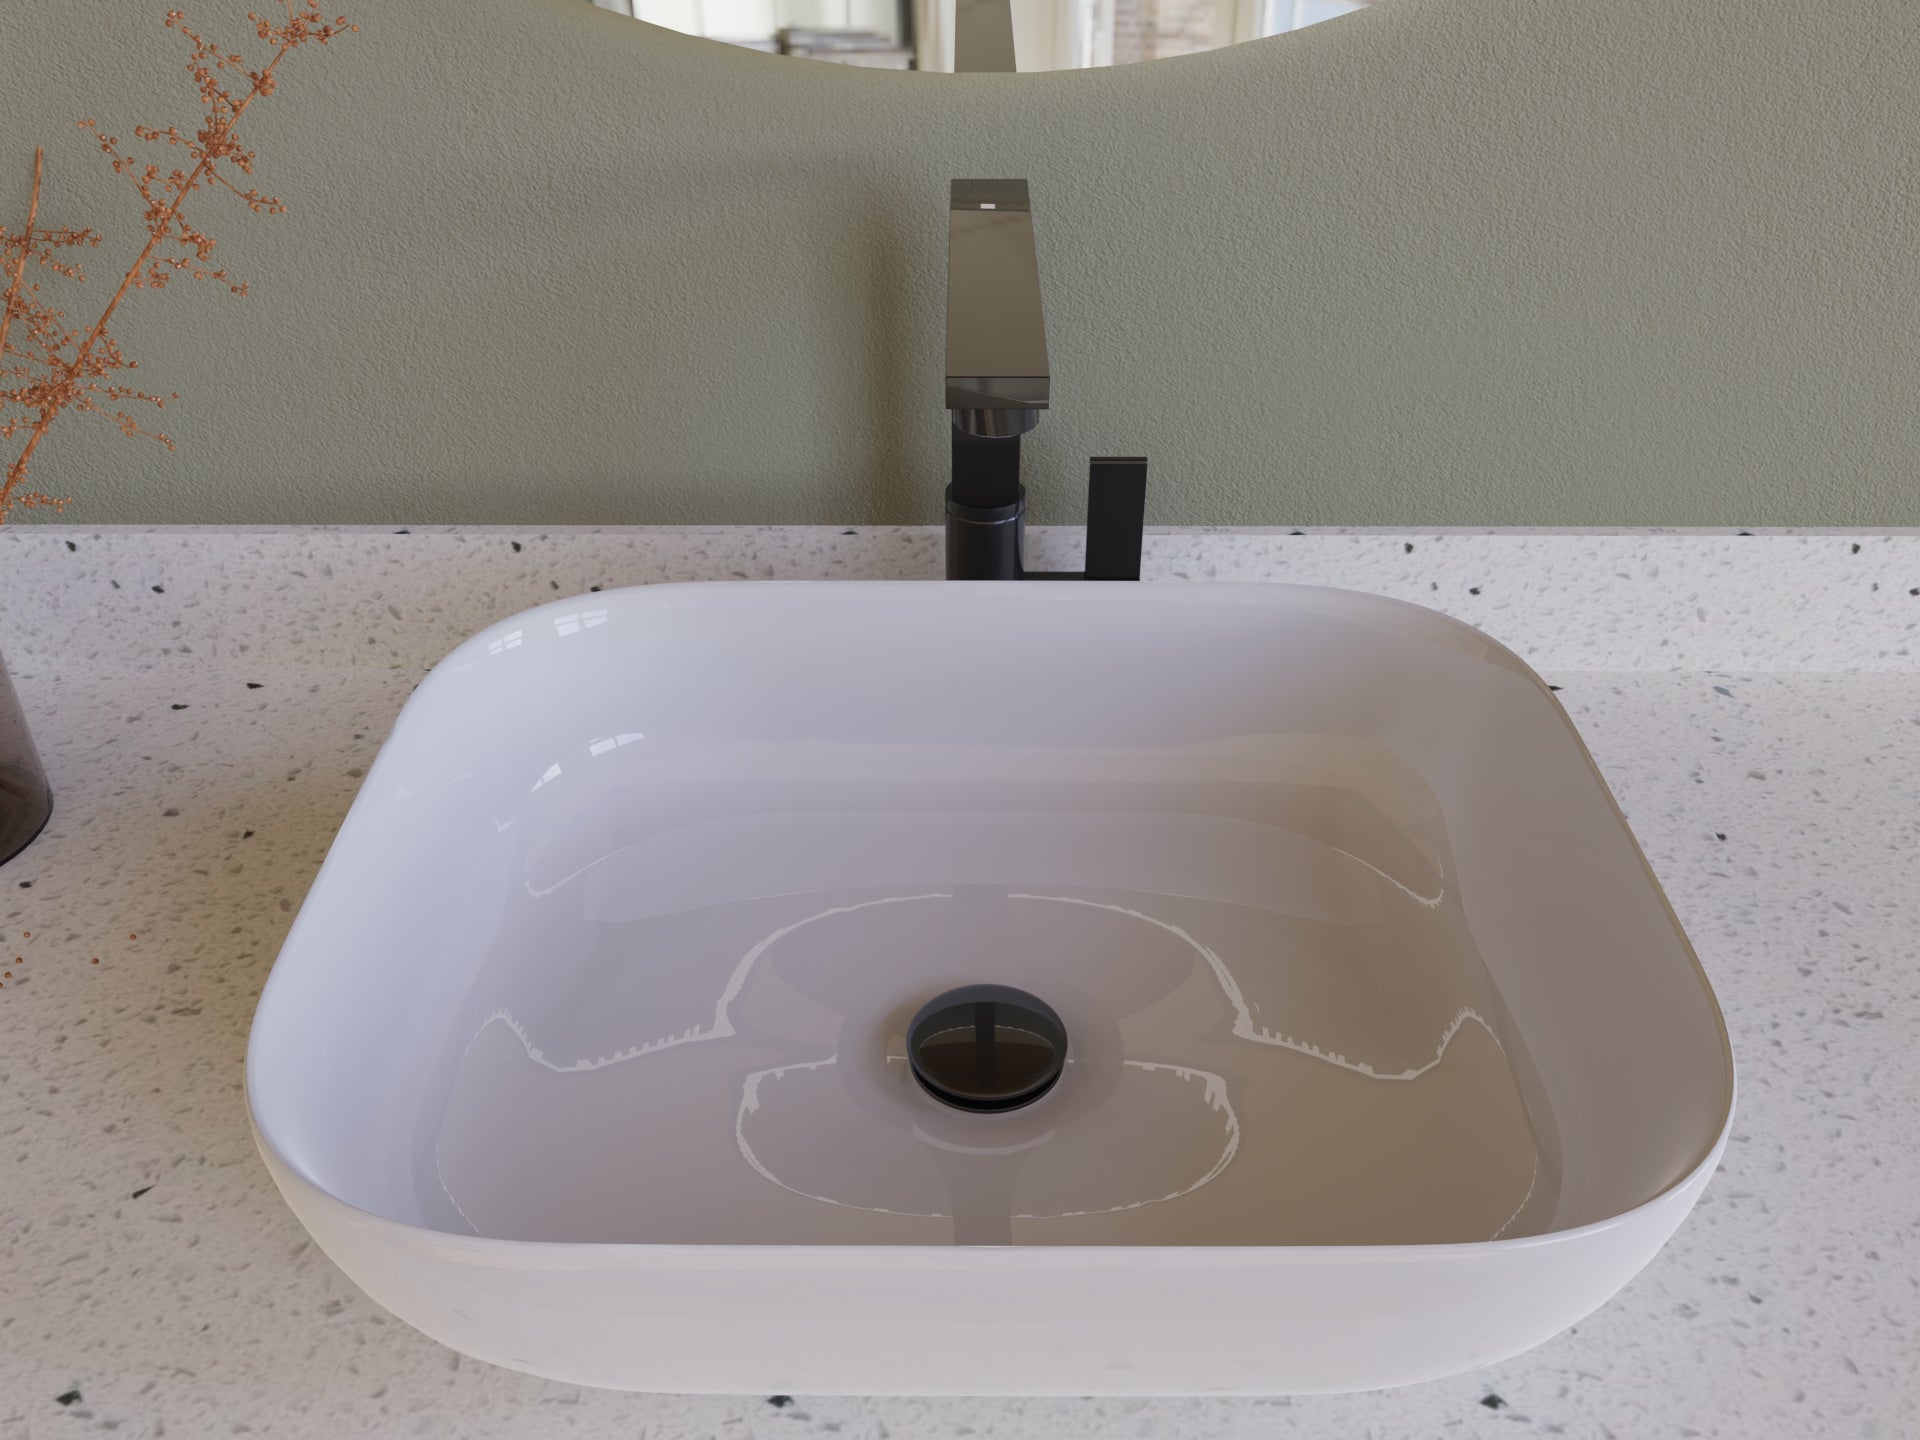 DAX Round Vanity Sink Pop up Drain, Brass Body, 2-5/8 x 8-5/8 Inches (DAX-82005)